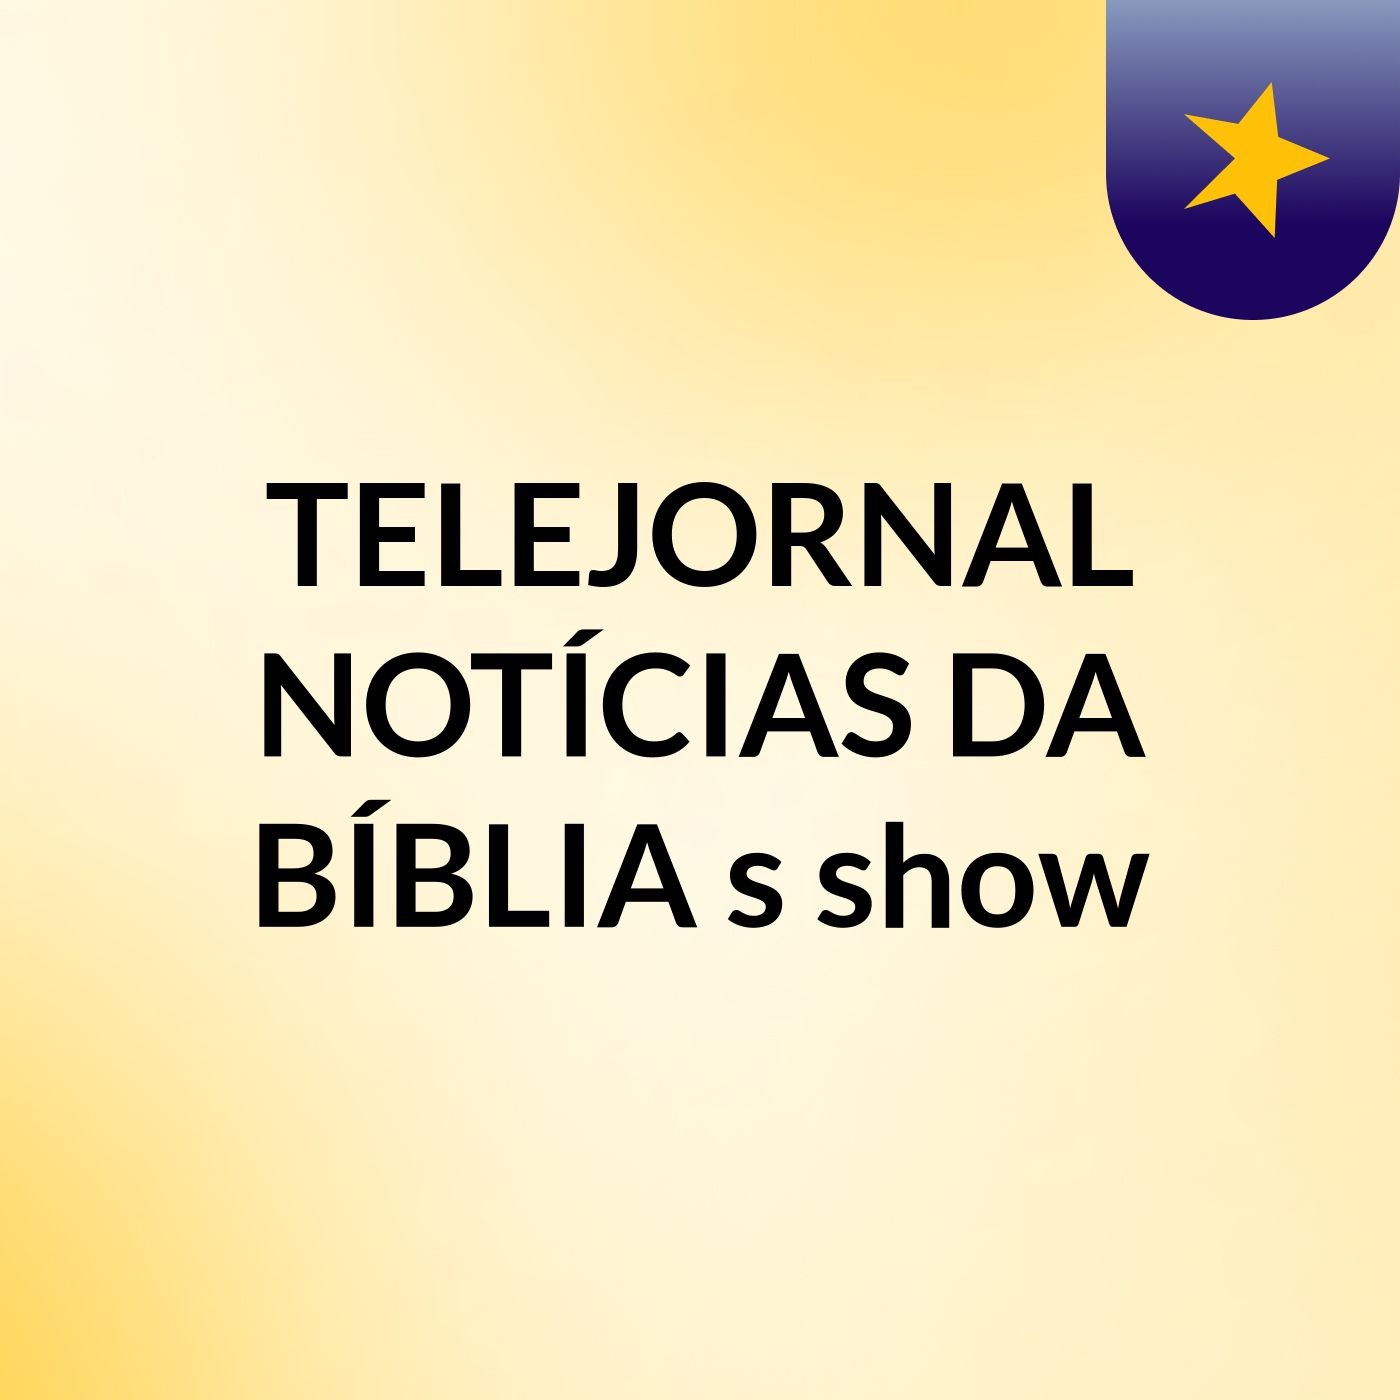 TELEJORNAL NOTÍCIAS DA BÍBLIA's show